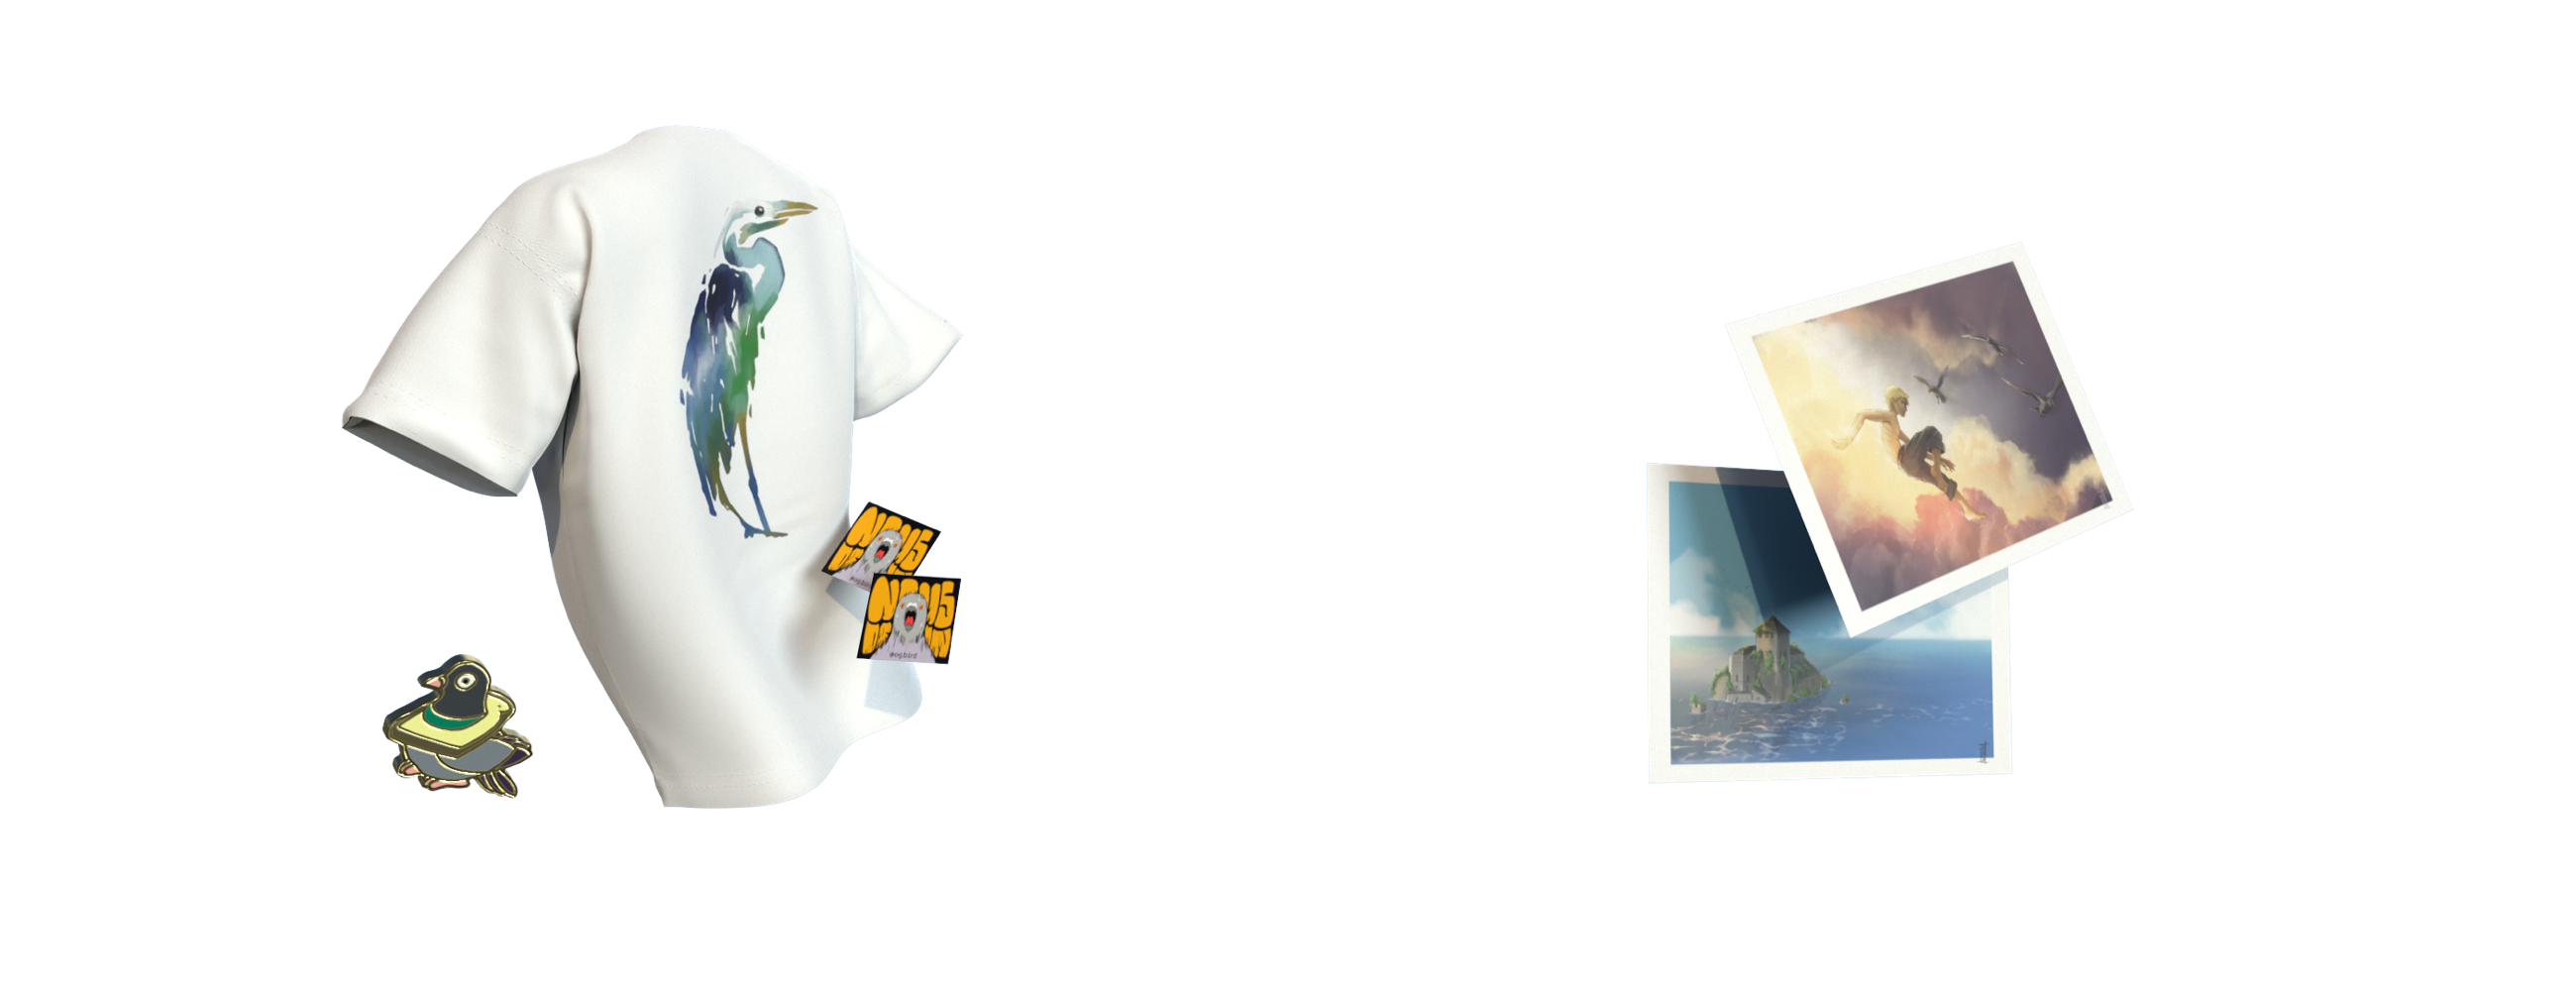 Ecriture "Shop" avec divers produits vendus par dessus